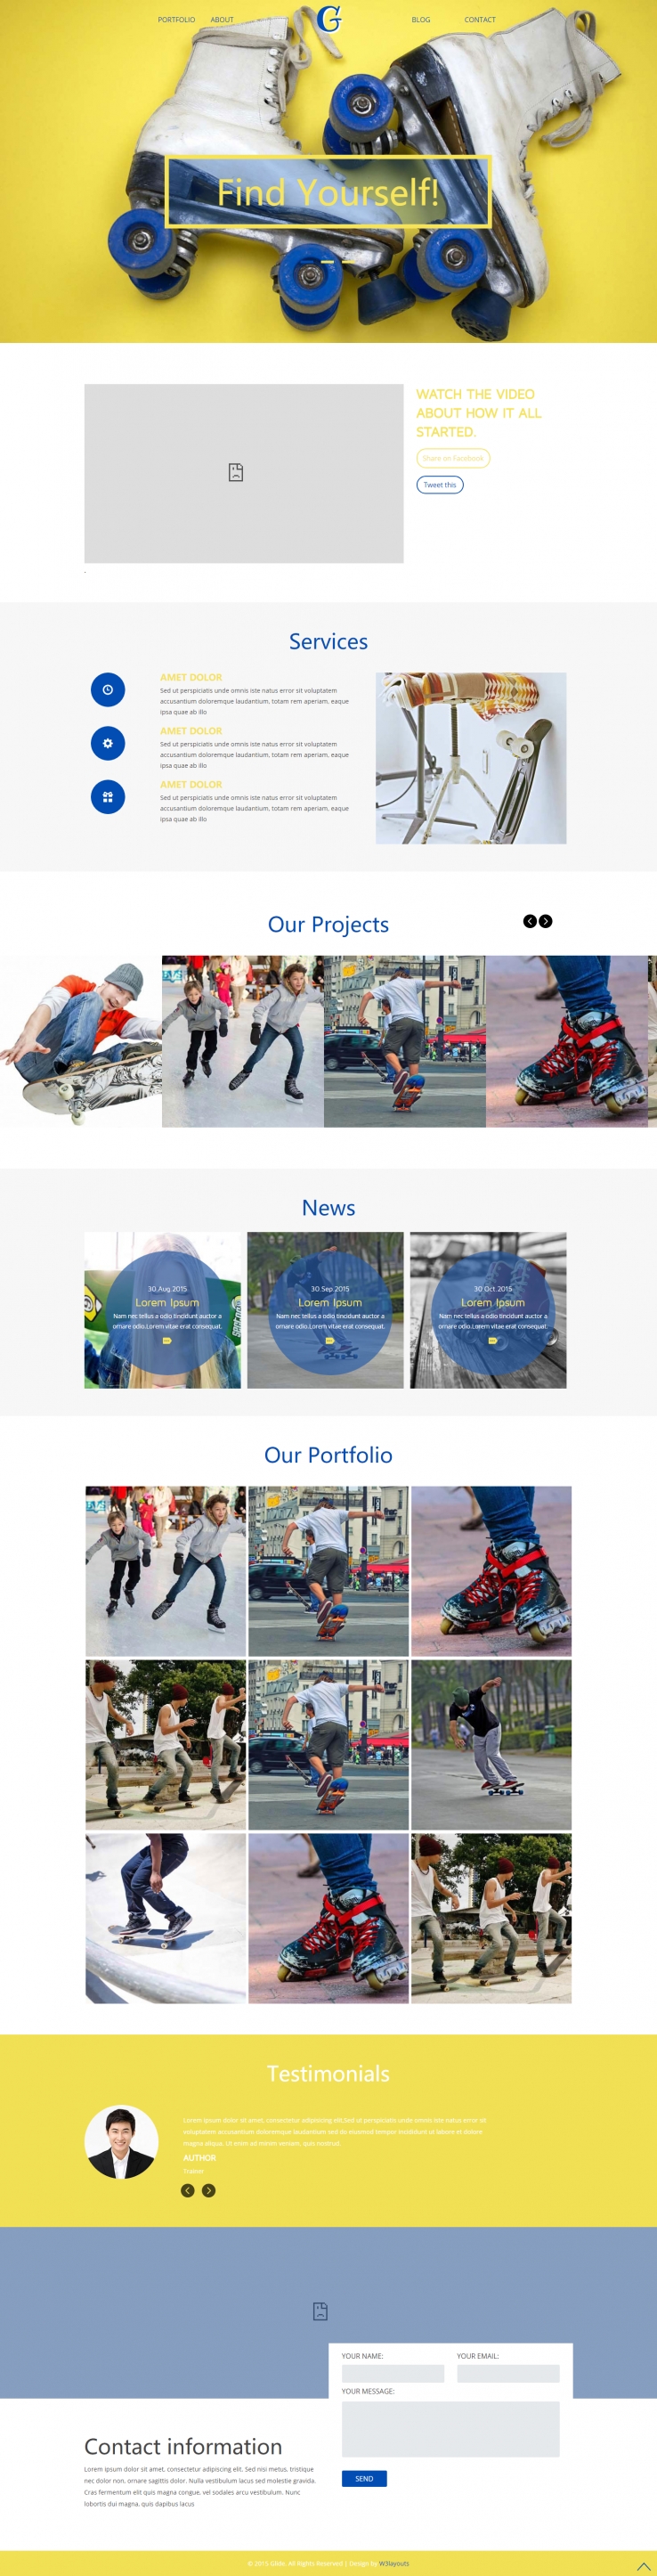 蓝色简洁风格的滑冰运动俱乐部整站网站源码下载